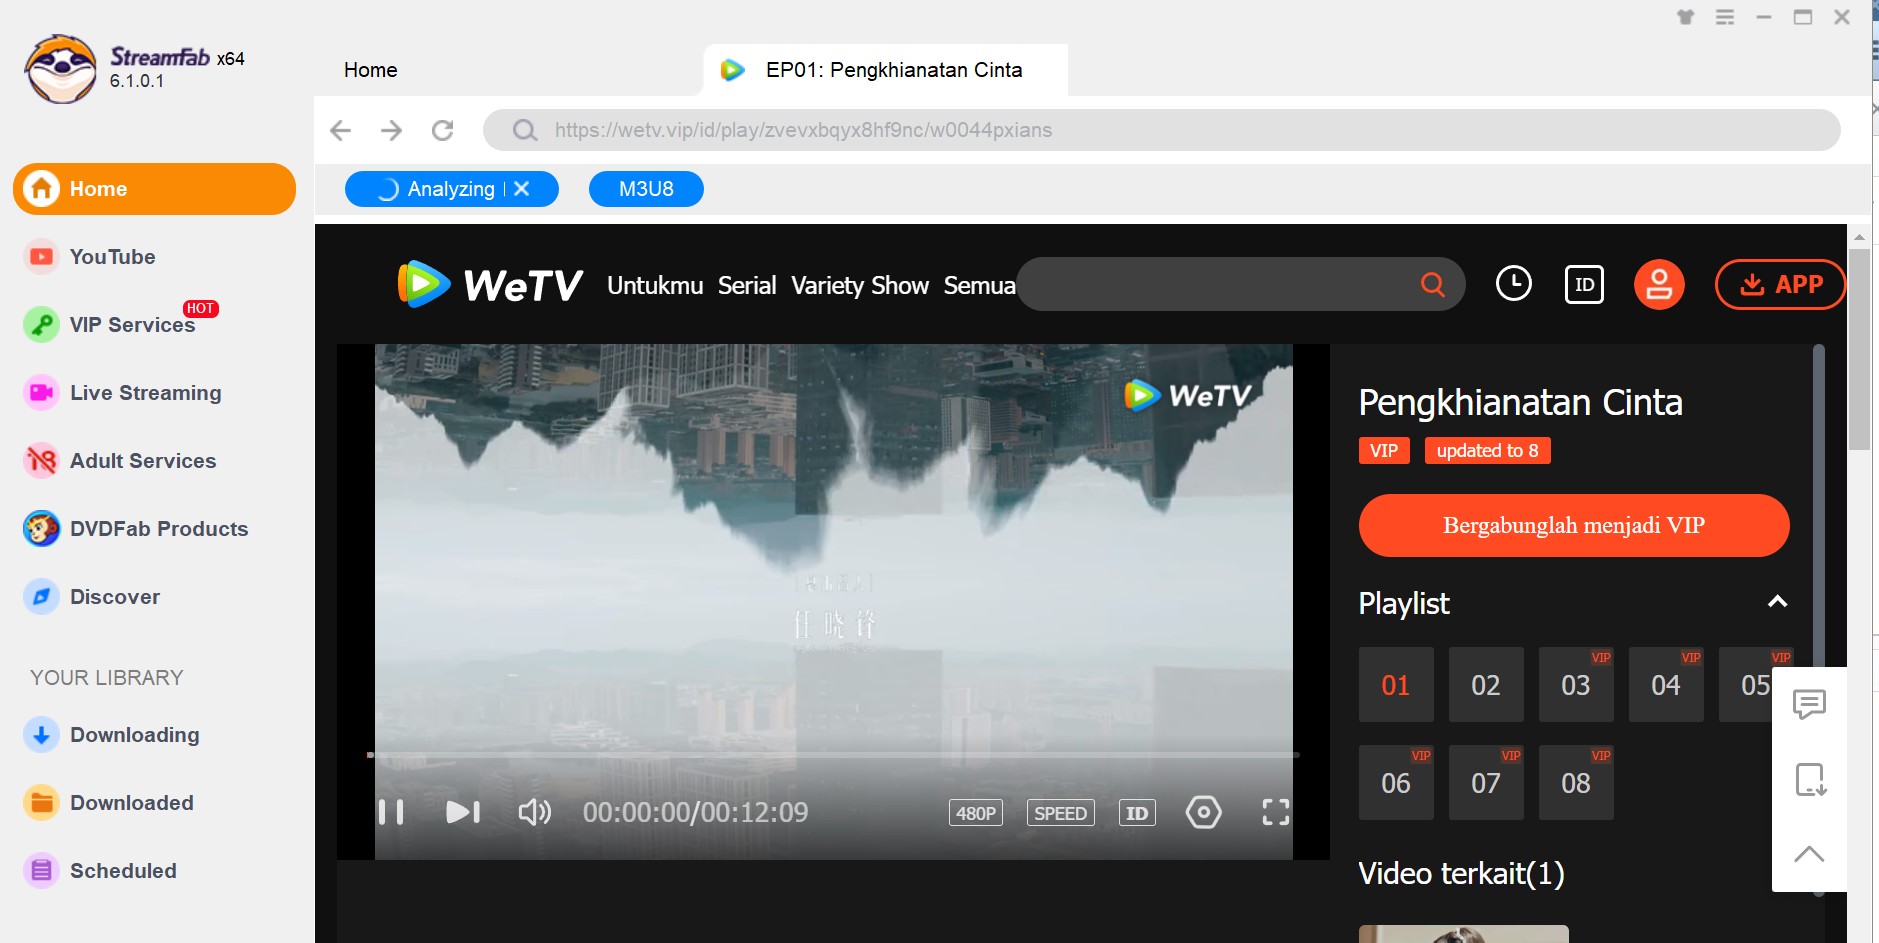 WeTV - Genuine HD Video Online Watching Platform